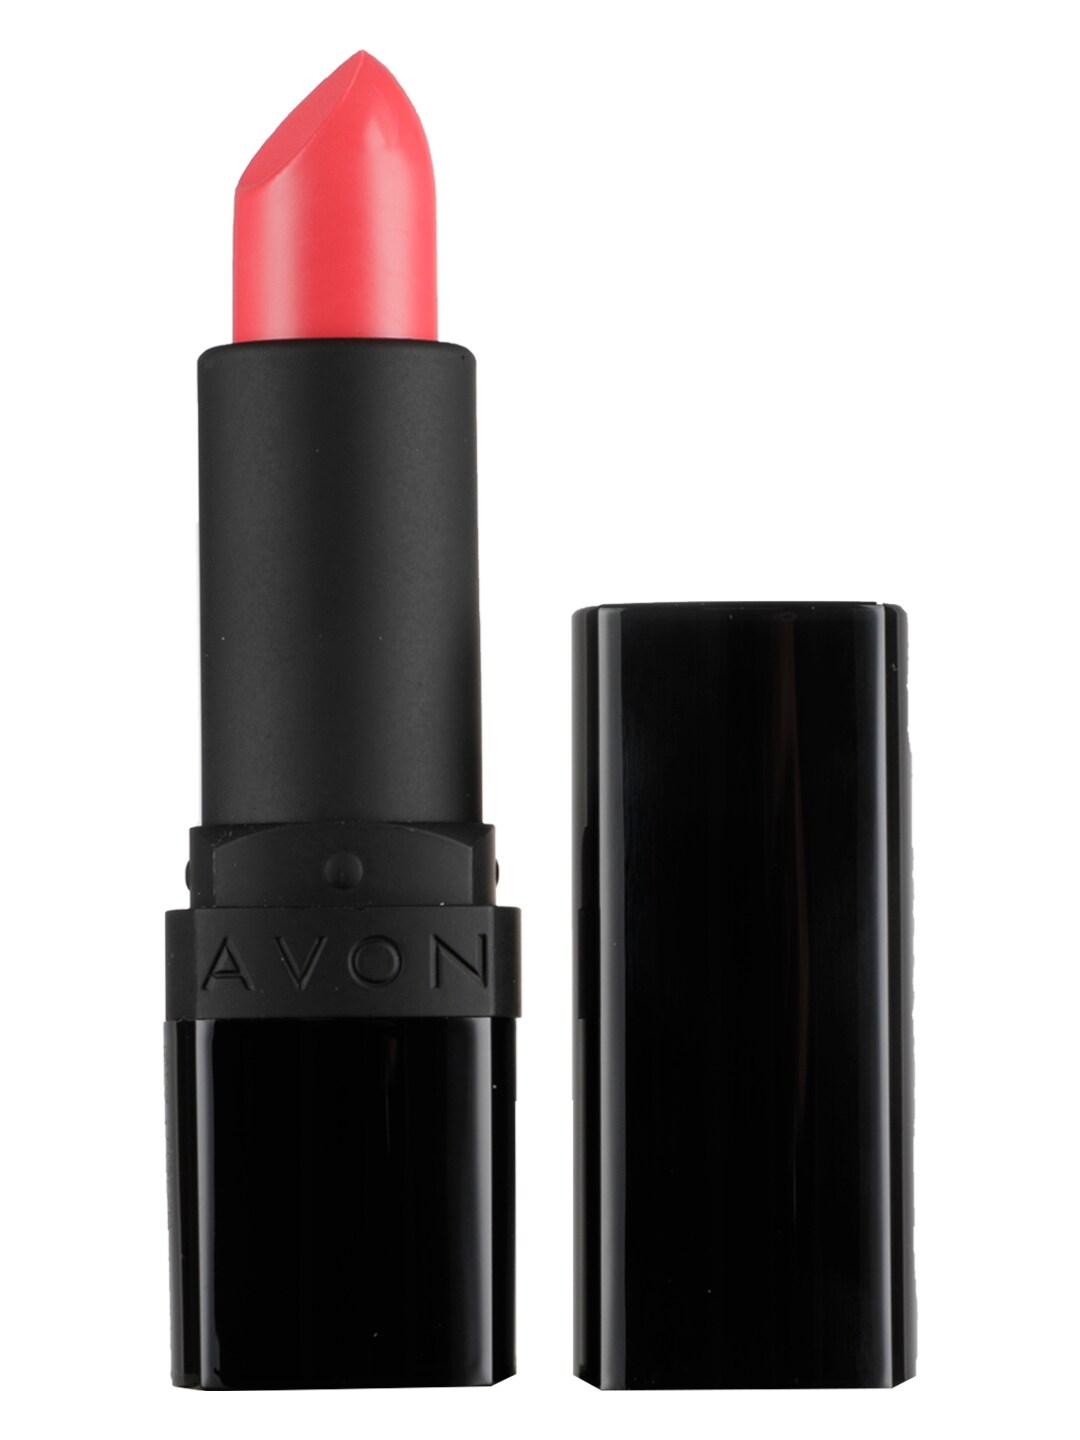 Avon True Color Perfectly Matte Lipstick   Vibrant Melon